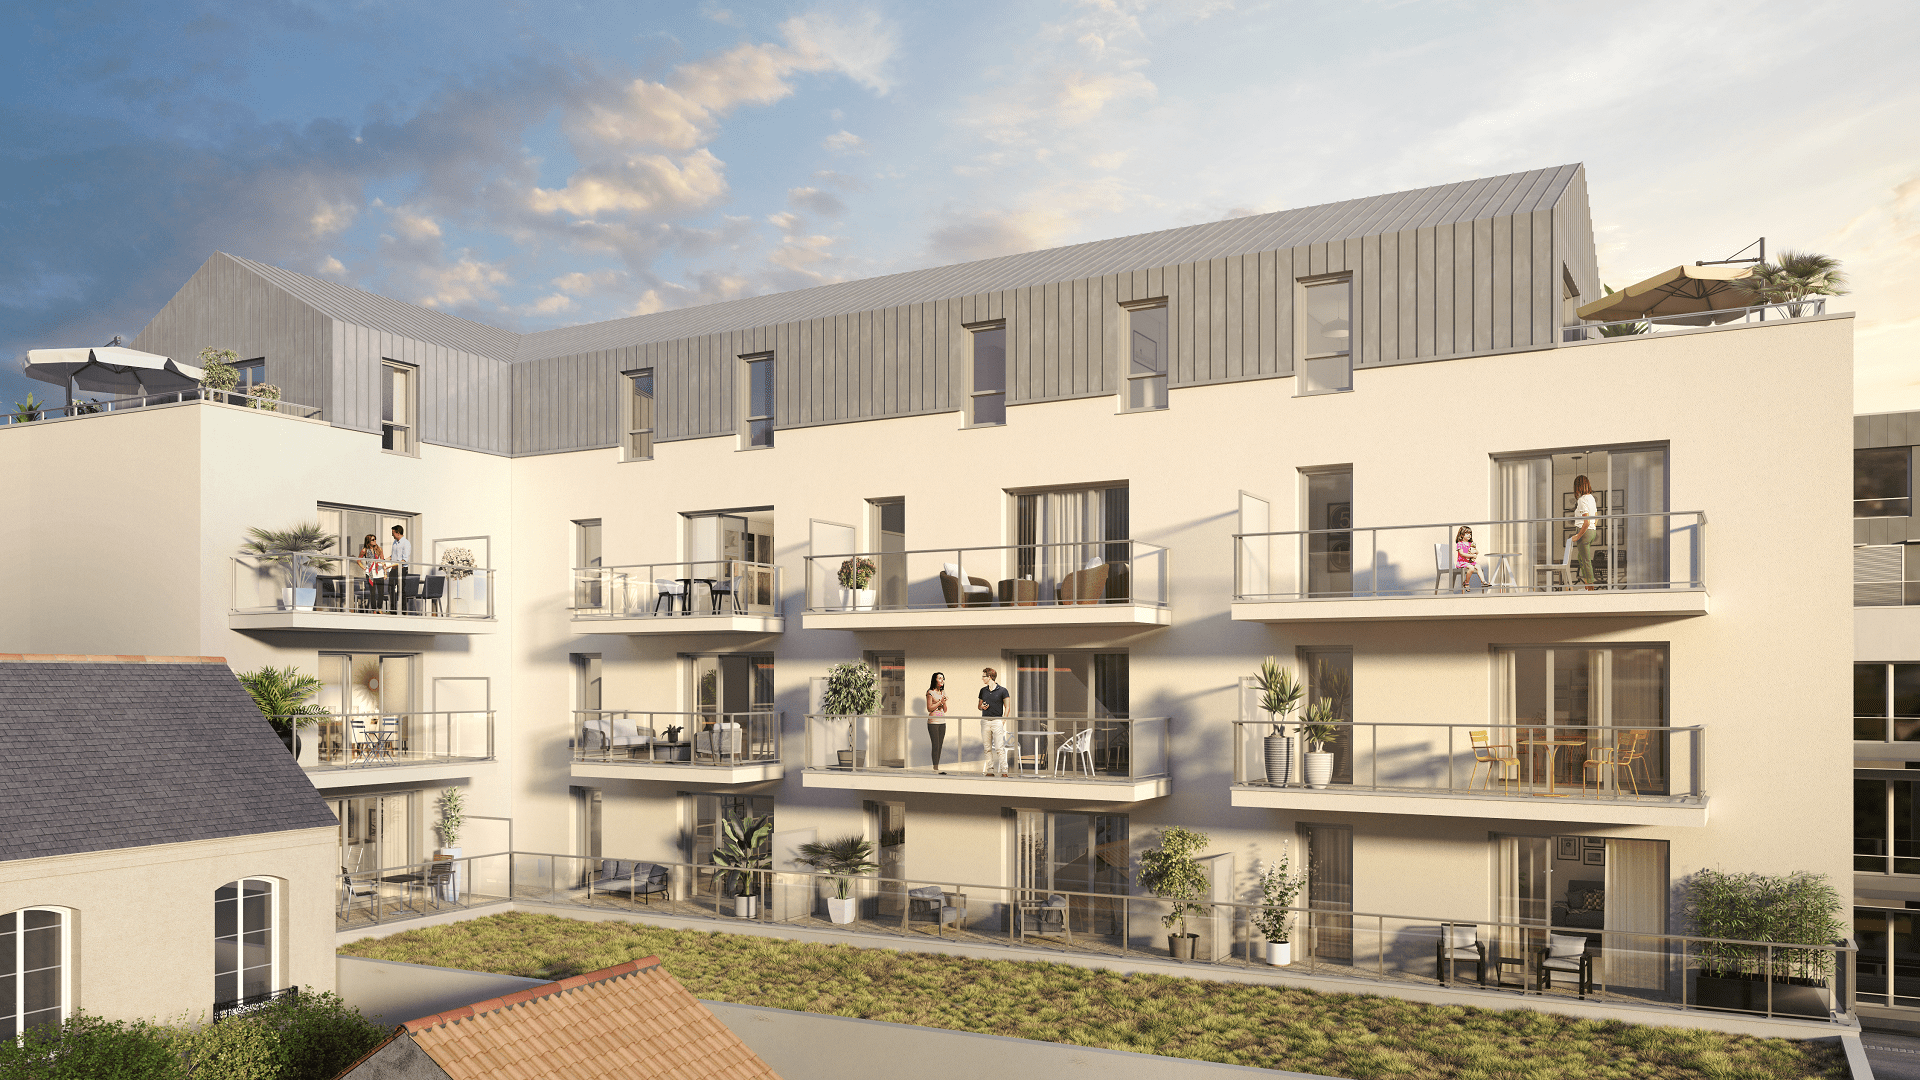 Projet immobilier d'appartement à vendre neufs, sur l'île de Nantes